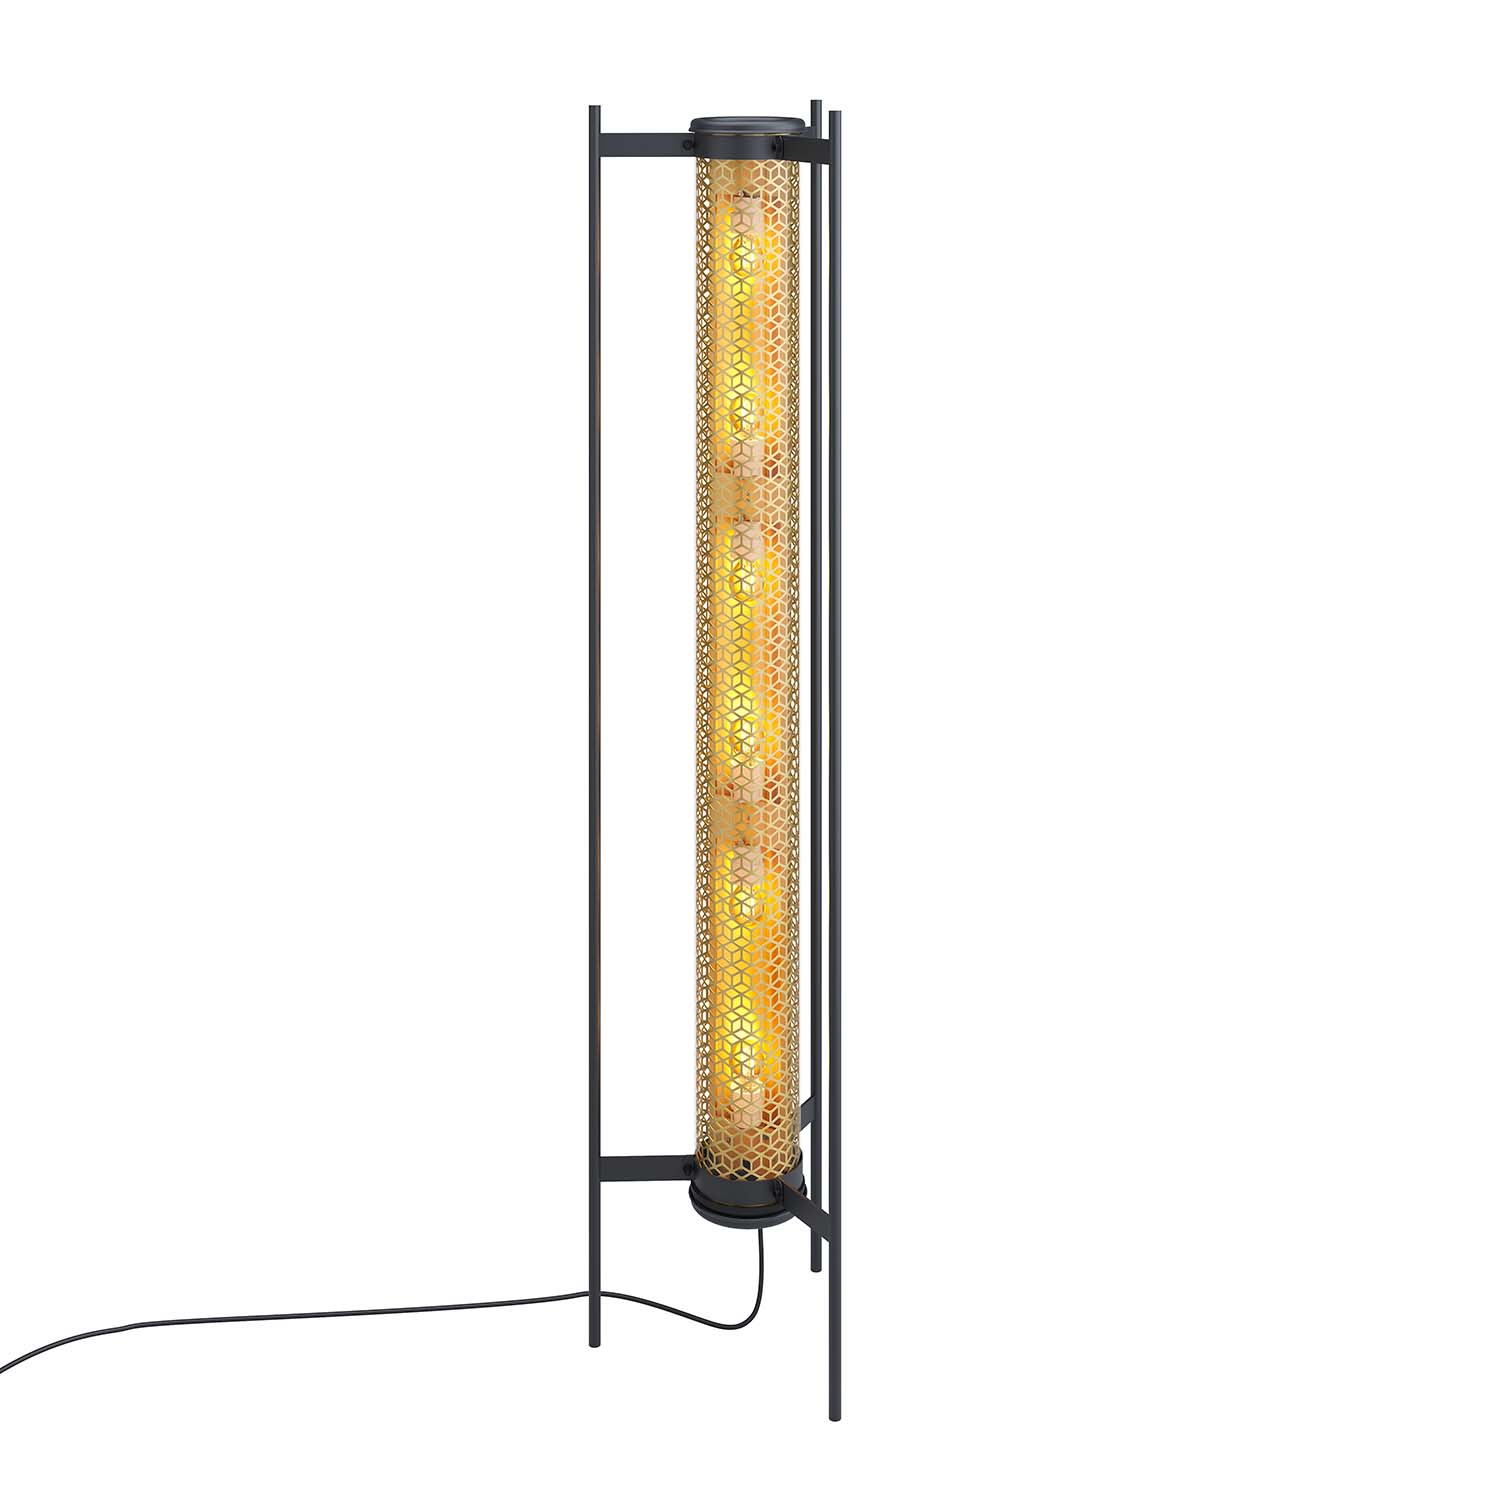 VENDOME - Art deco glass tube floor lamp for living room